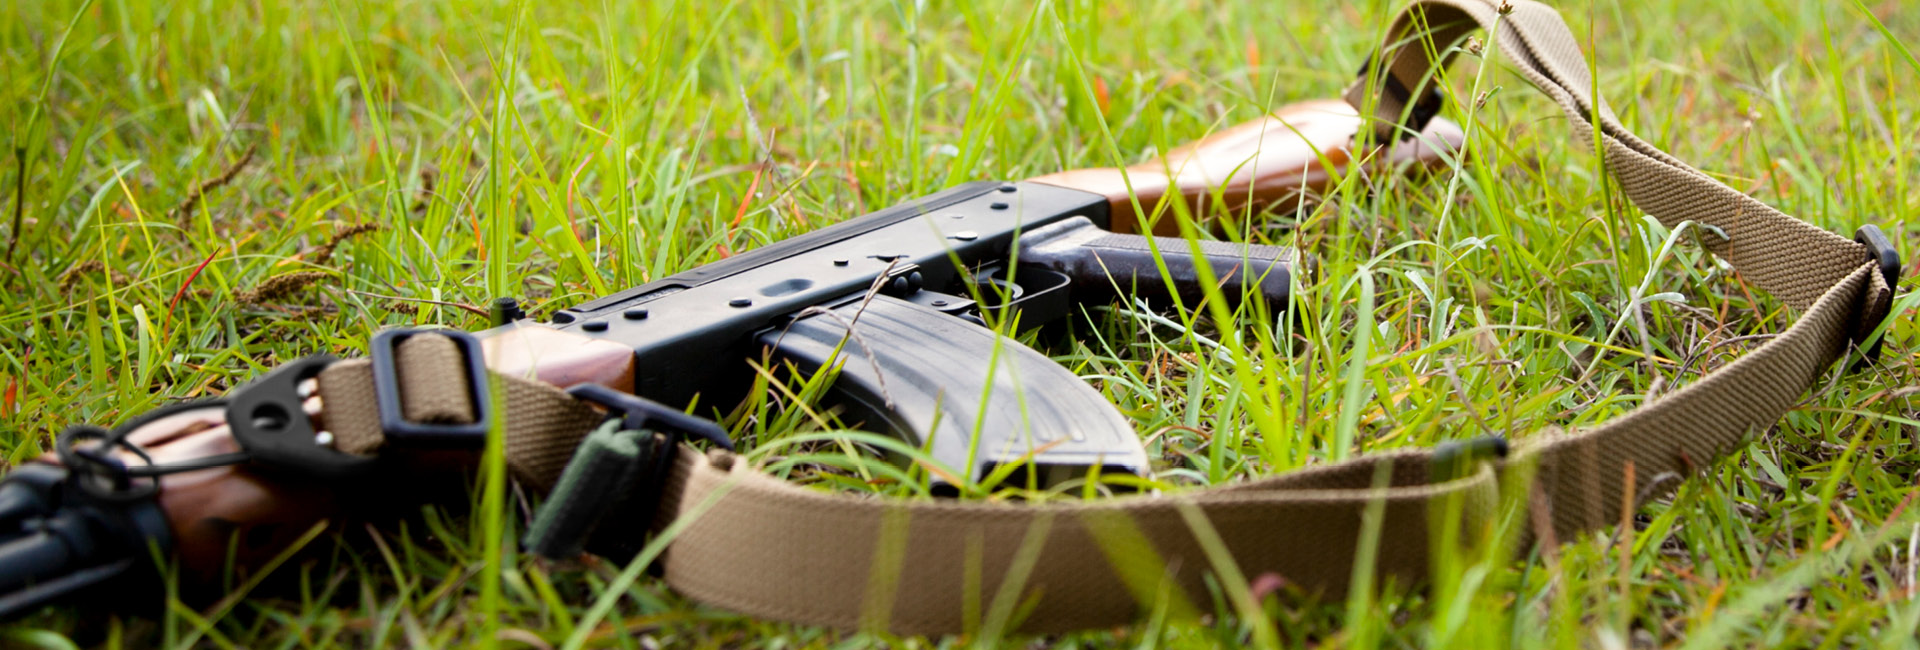 Standard AK Sling on a AK47 in Grass